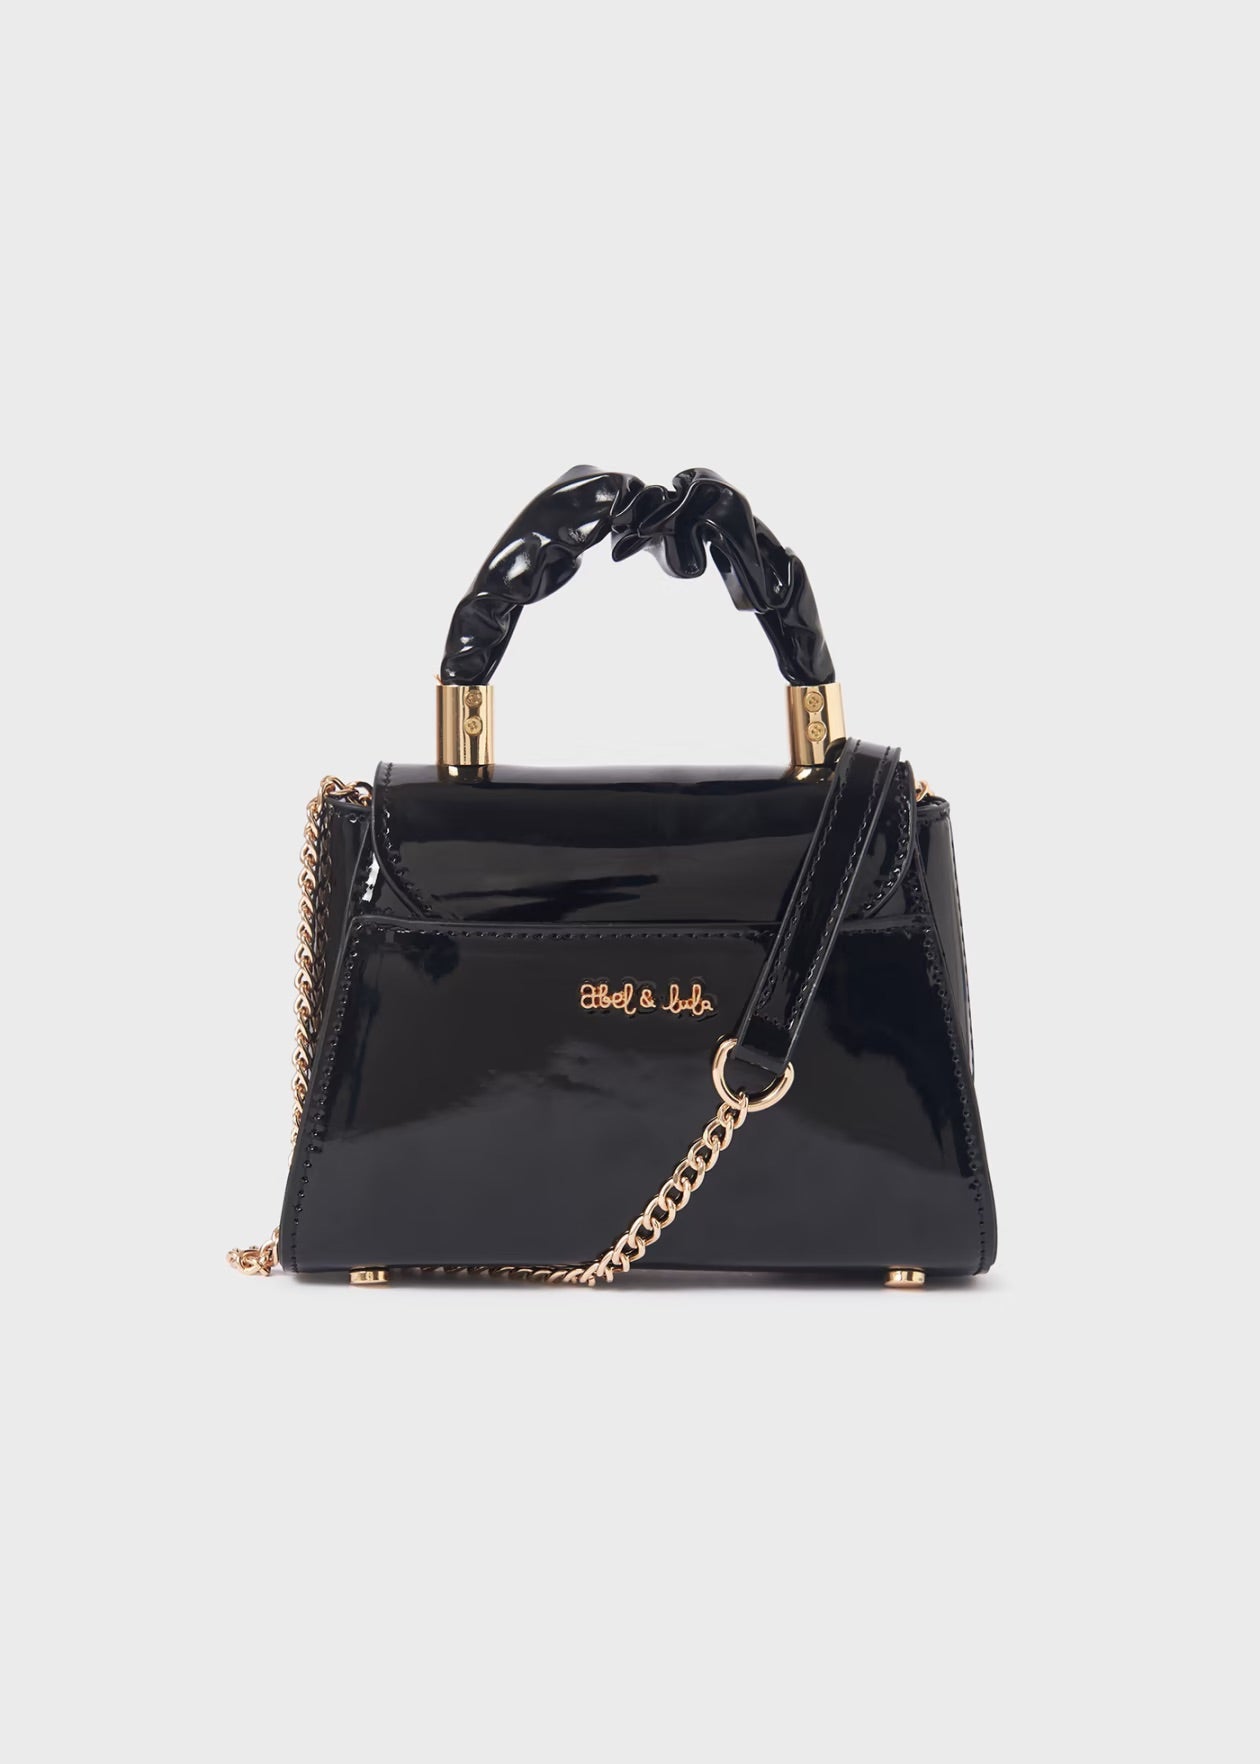 ABEL & LULA Girls Black Patent Bag - 5992